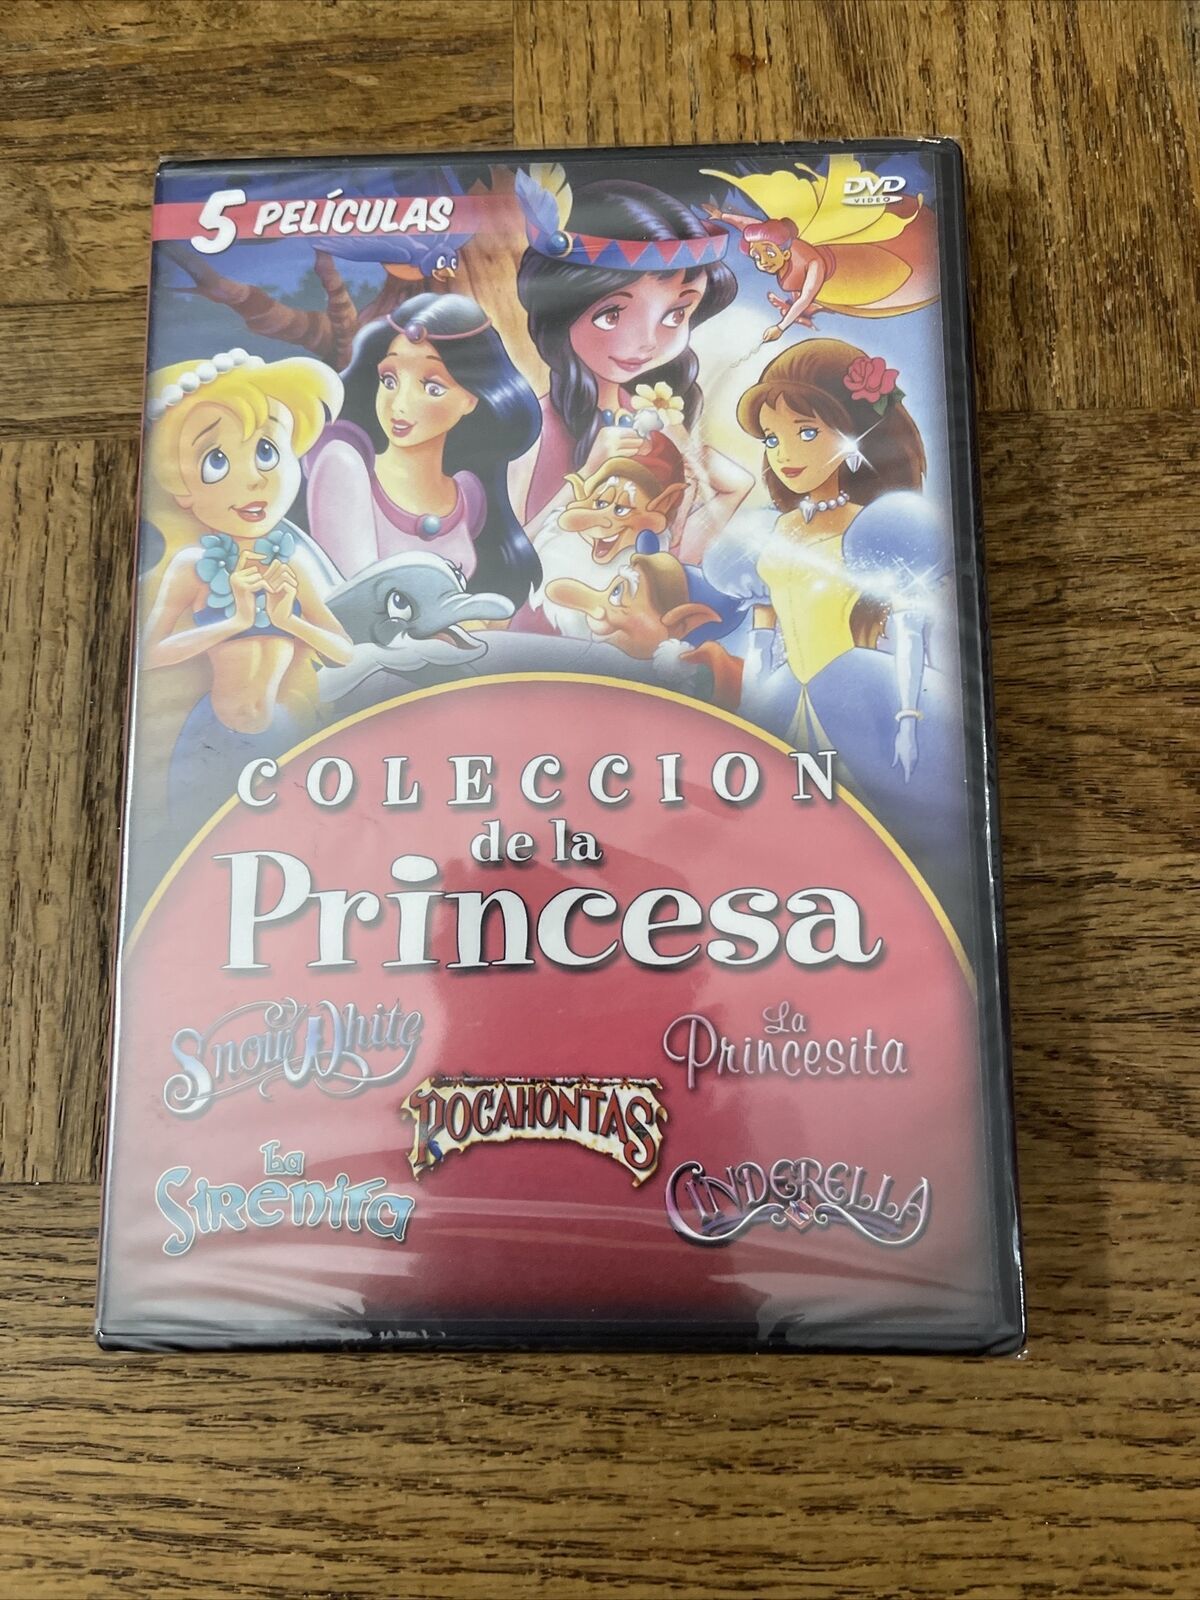 Primary image for Coleccion De La Princesa DVD